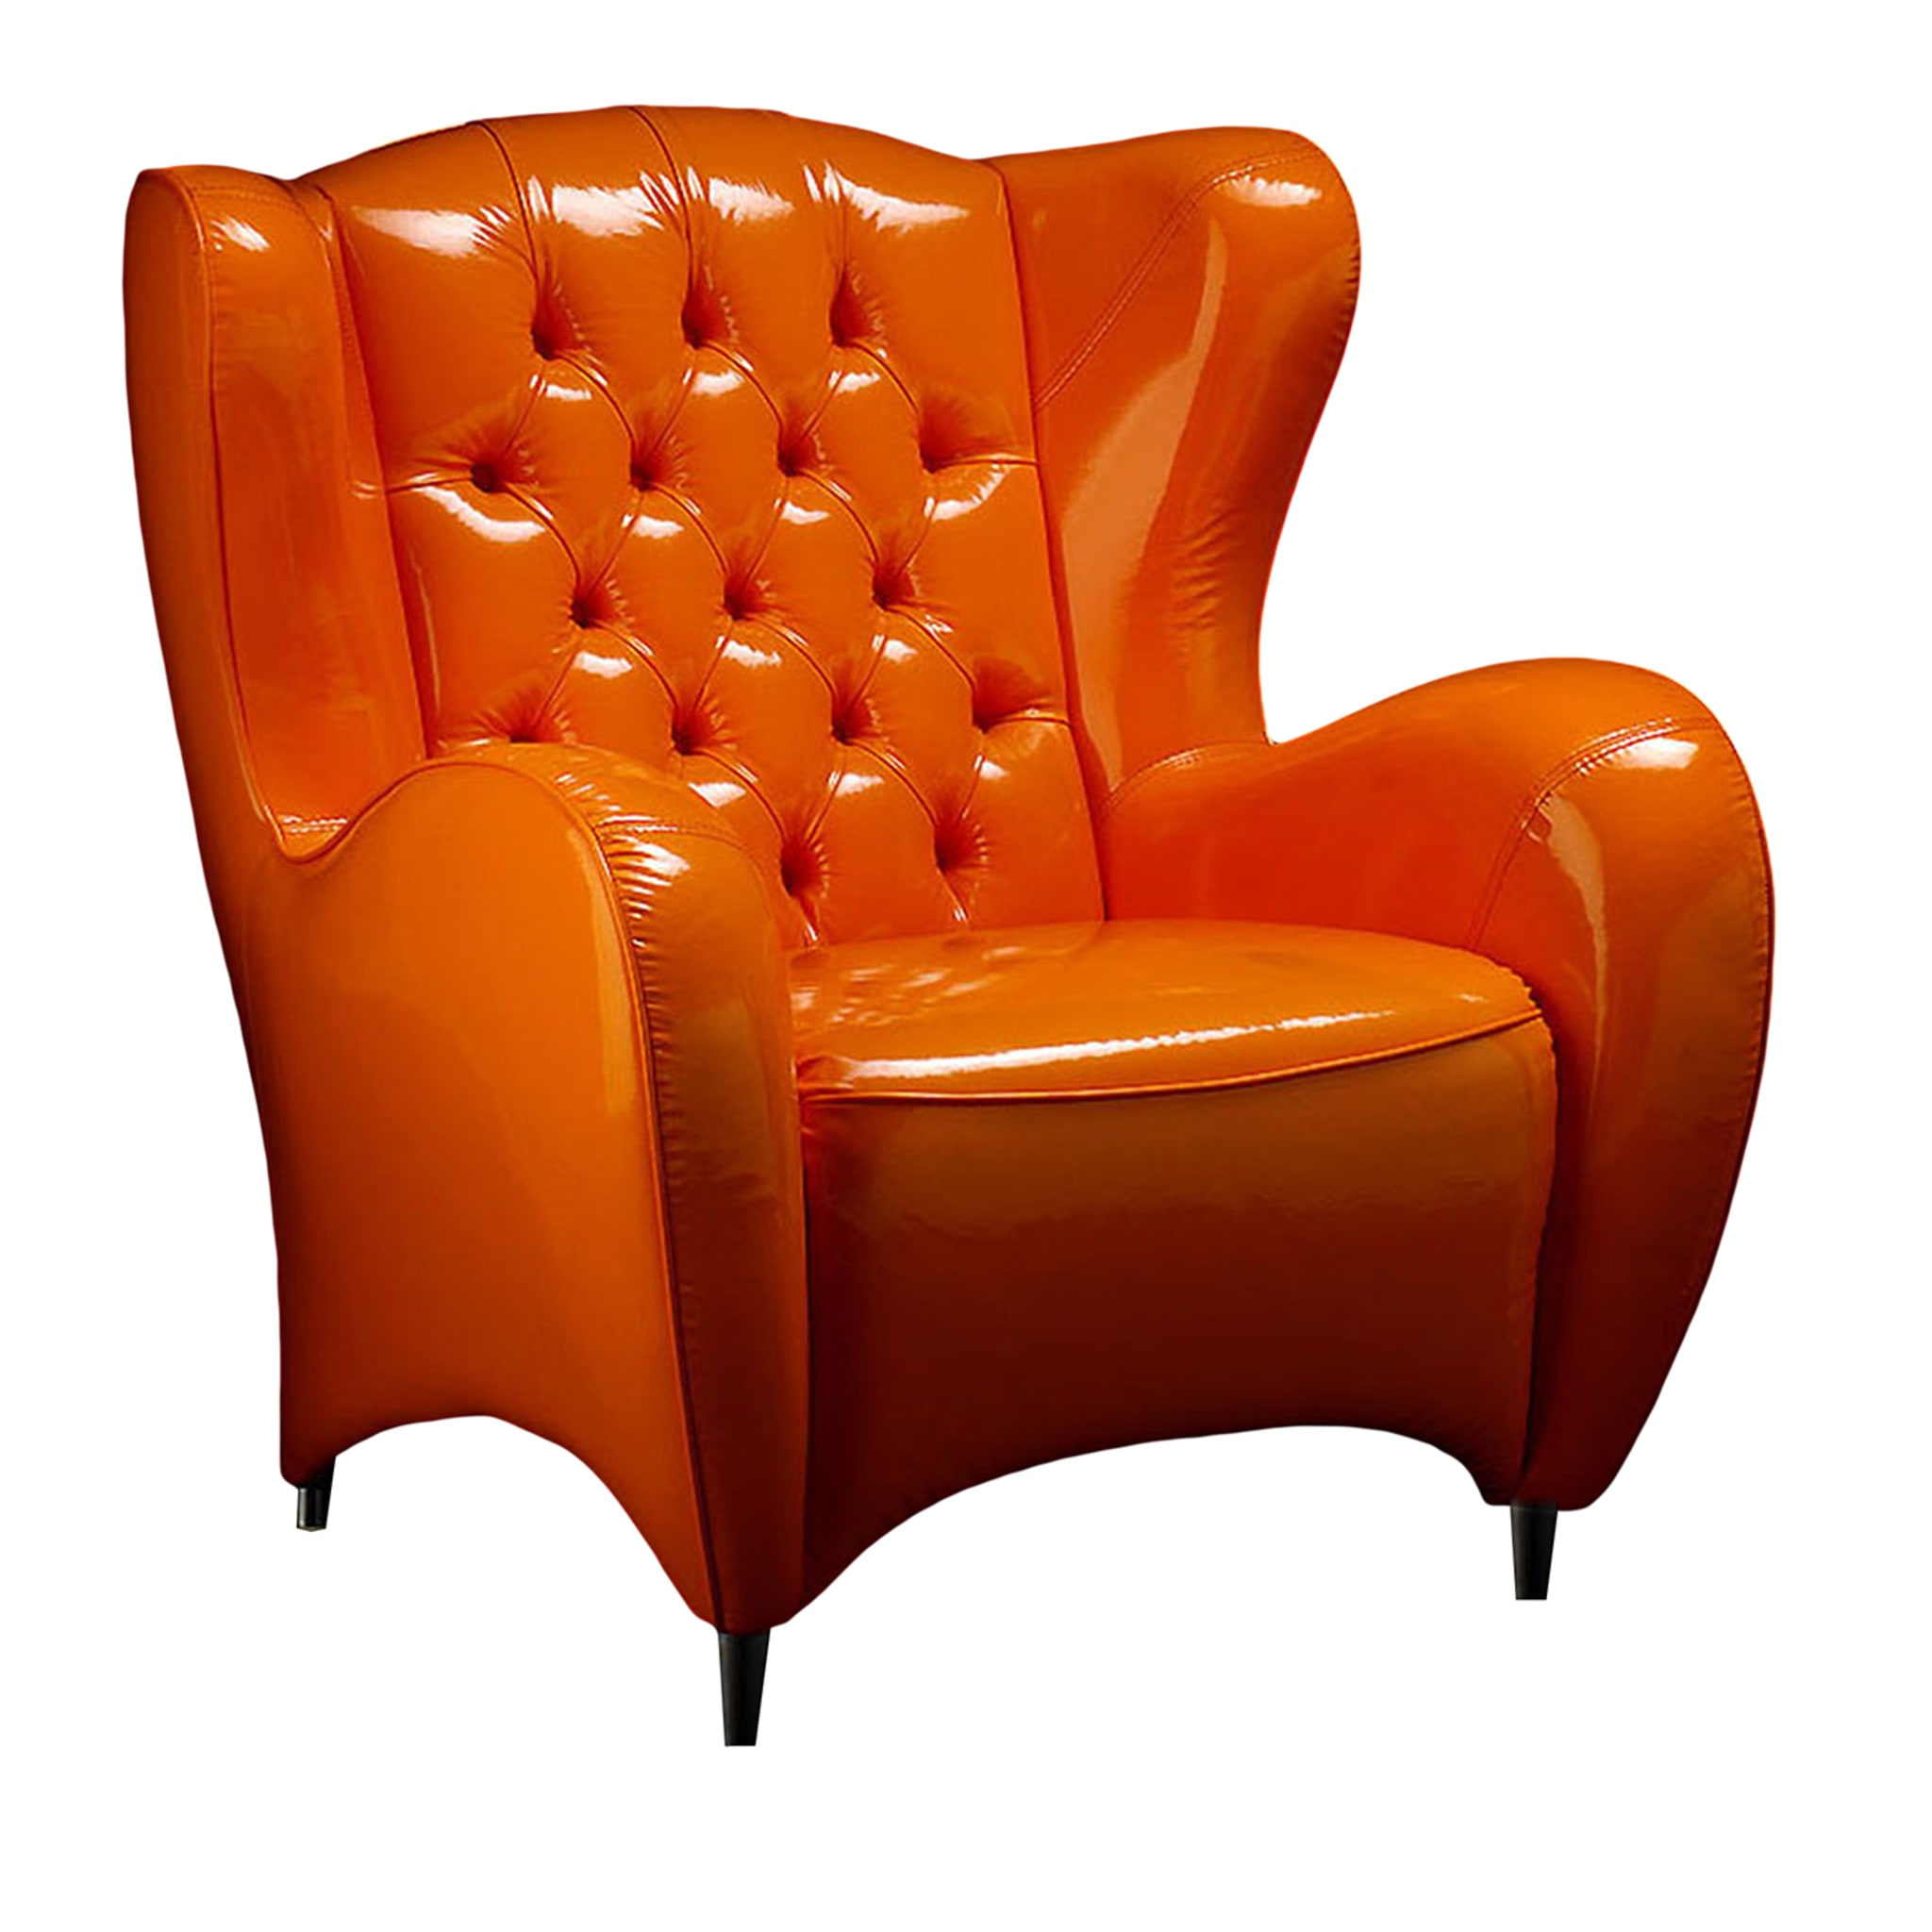 Schinke Orange Sessel - Hauptansicht